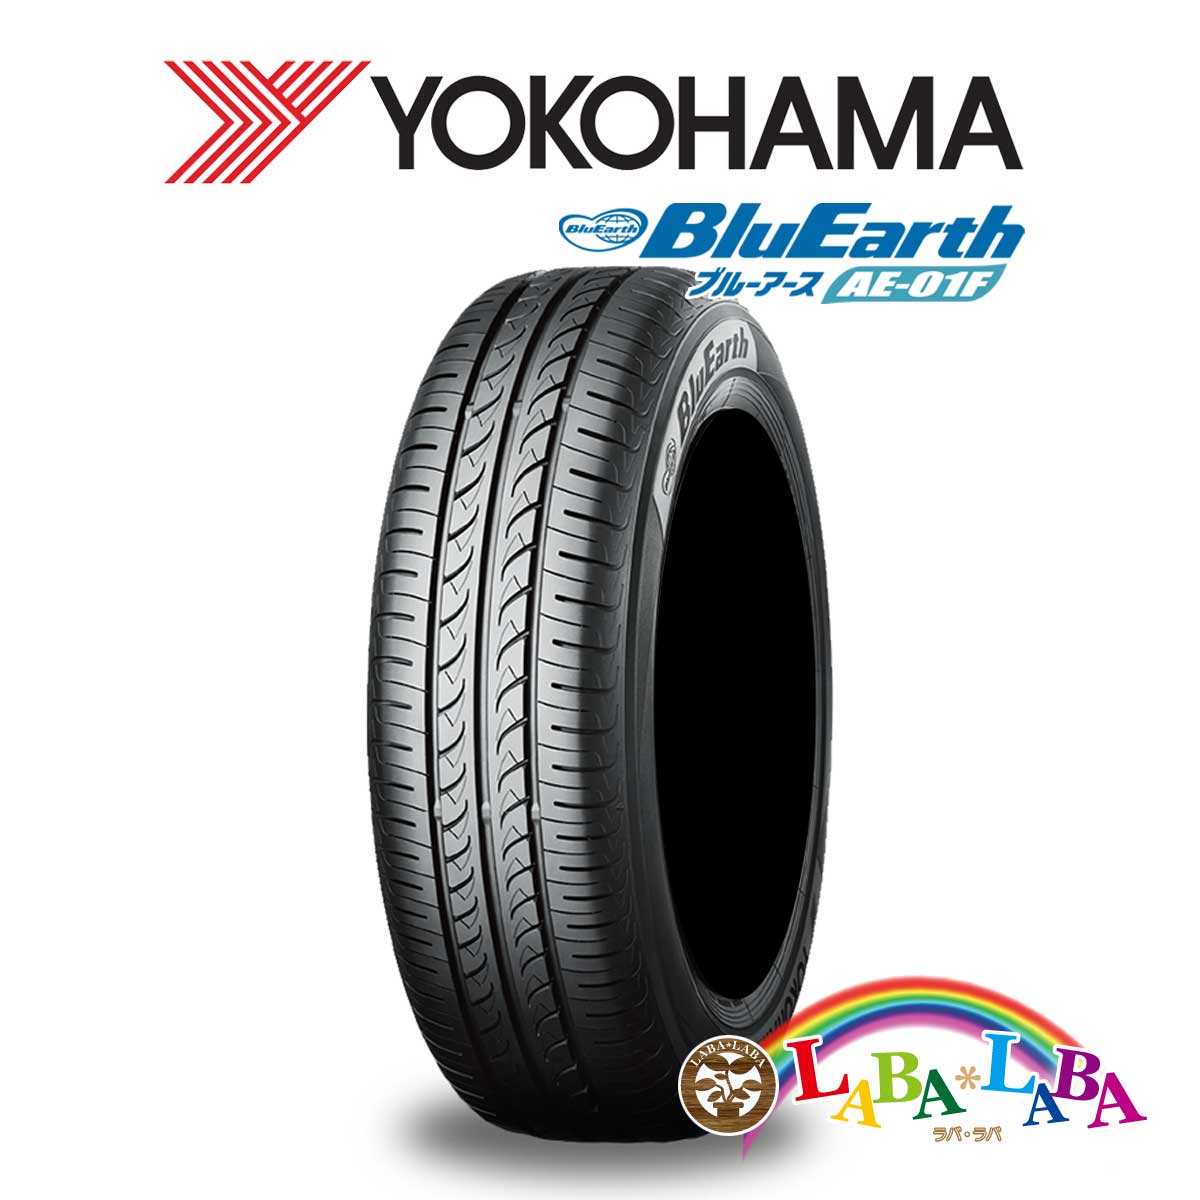 適切な価格 ２本以上送料無料 国産タイヤ サマータイヤ 新品 タイヤのみ 最も完璧な YOKOHAMA ヨコハマ 175 70R14 84S ブルーアース BluEarth AE01F